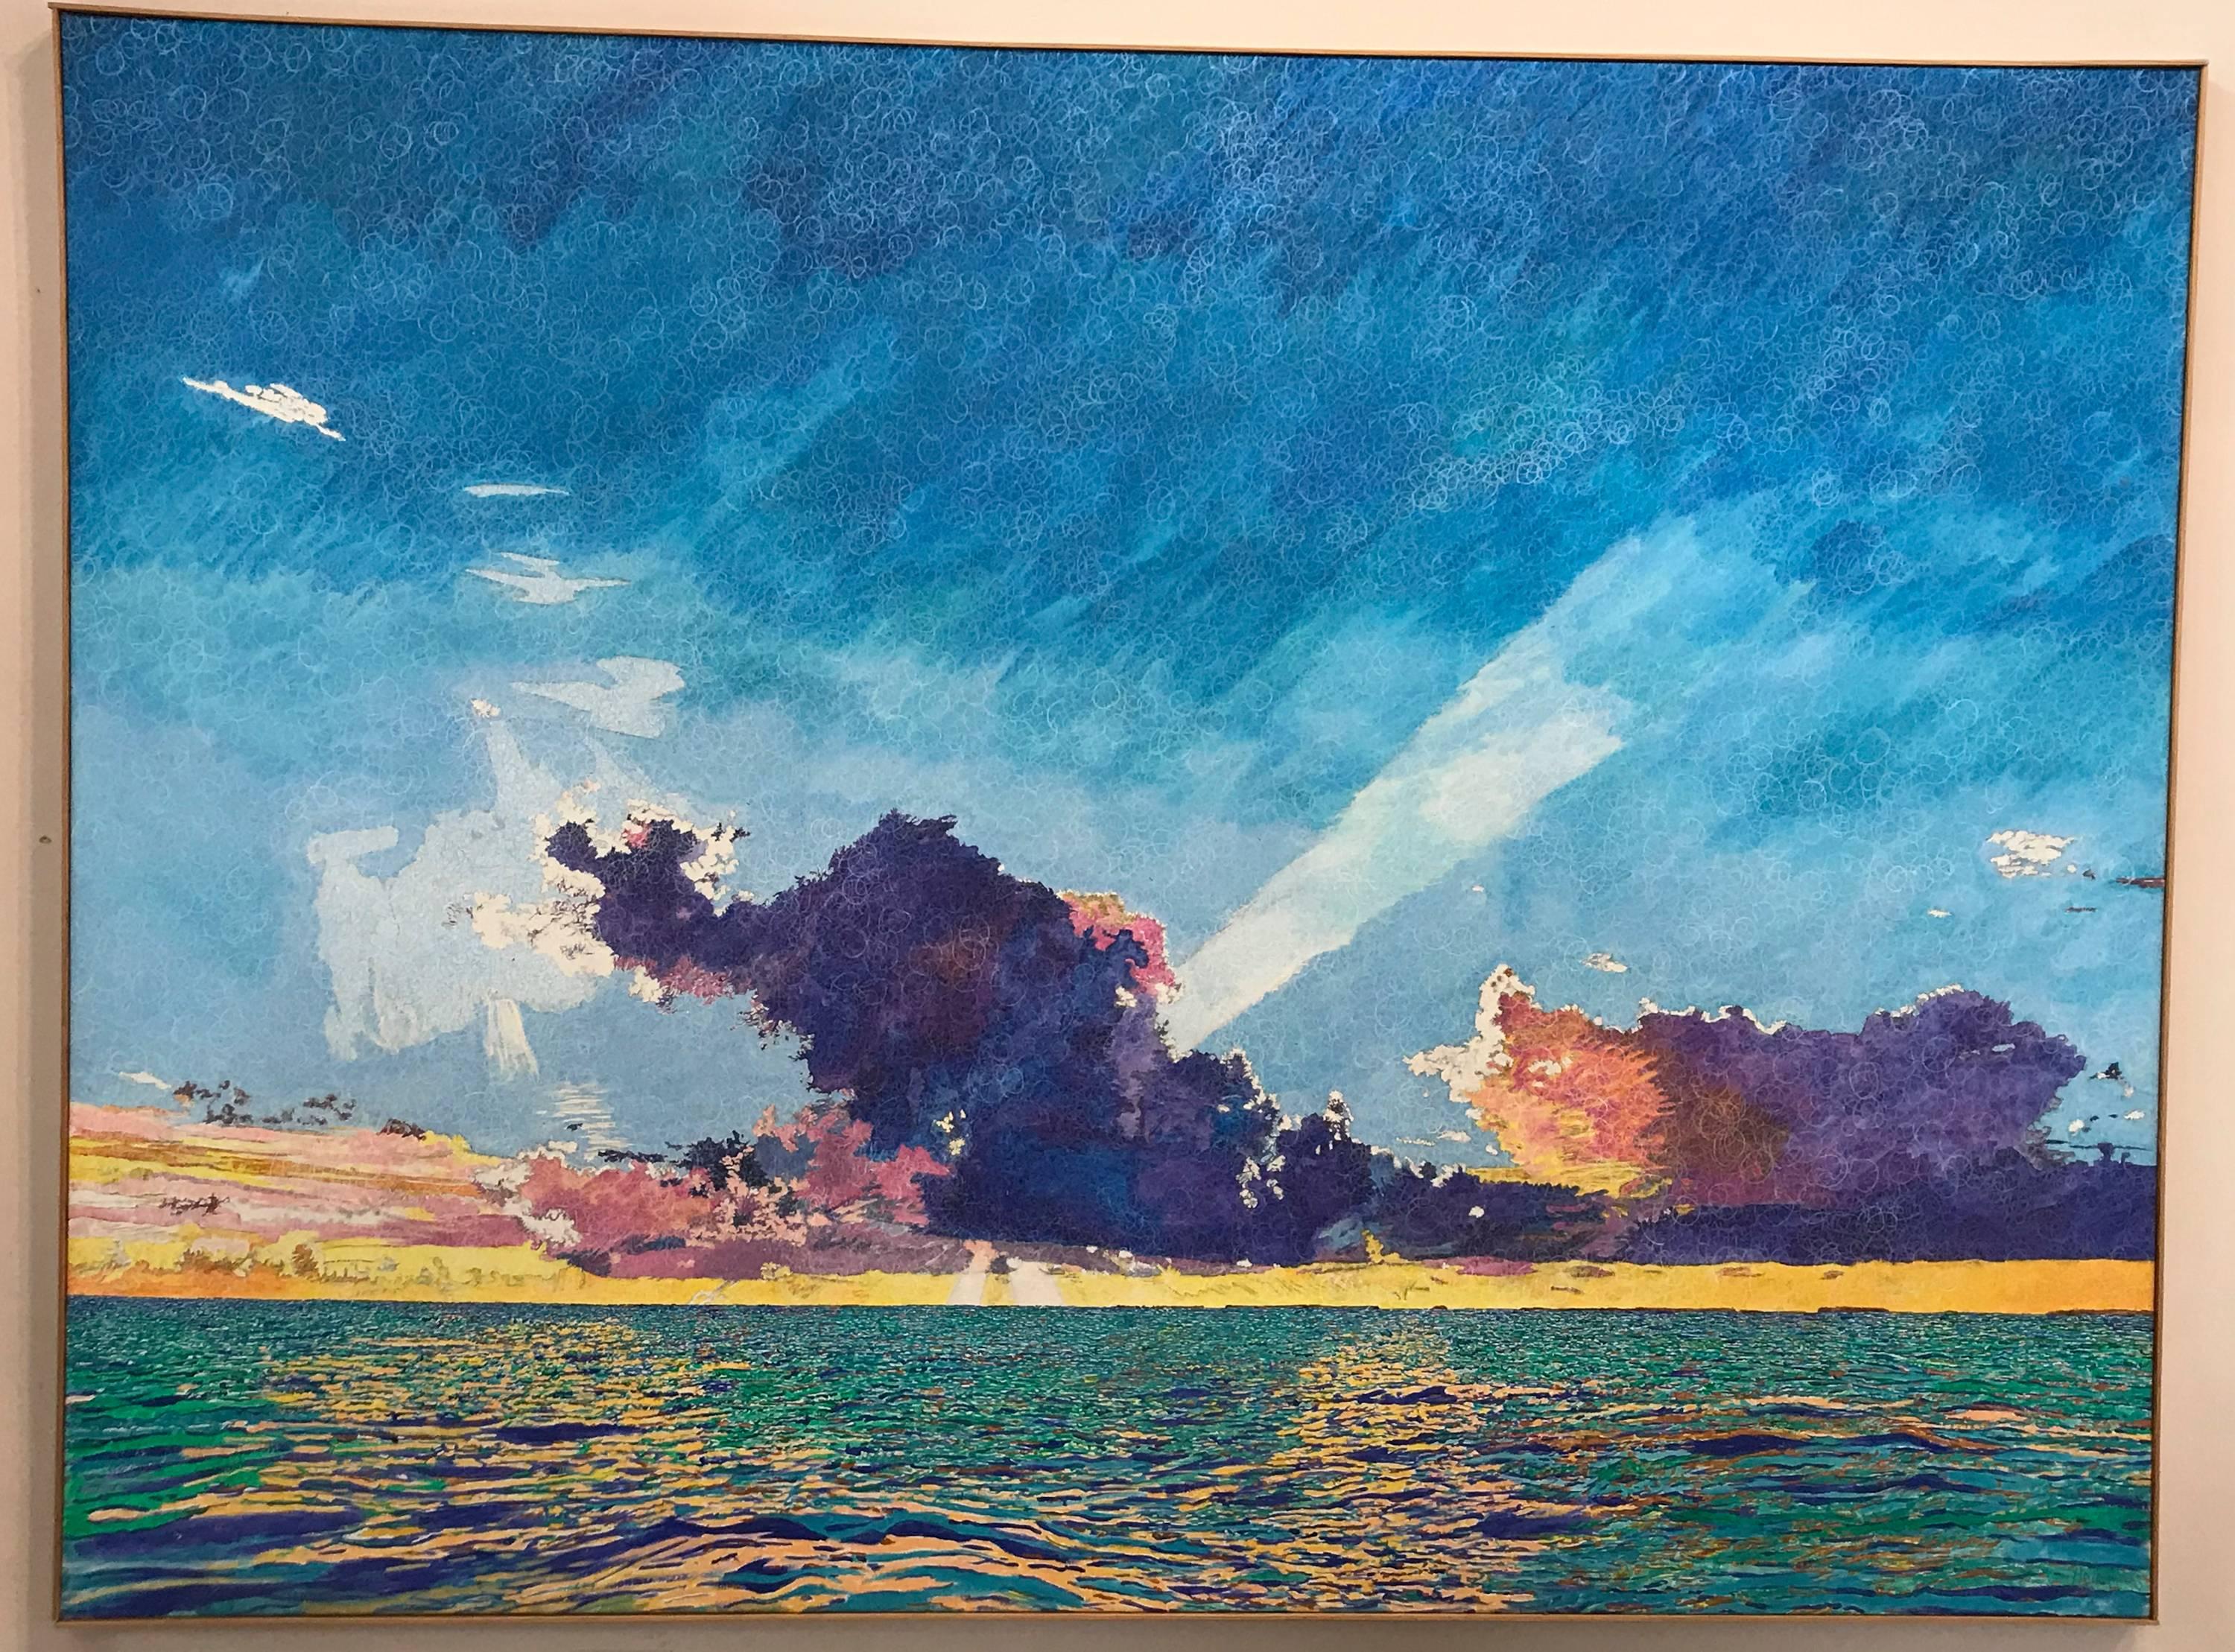 Landscape Painting John Hogan - Nuages de mer coucher de soleil, Key Largo, bleu, rose, vert, peinture texturée, claire, grande